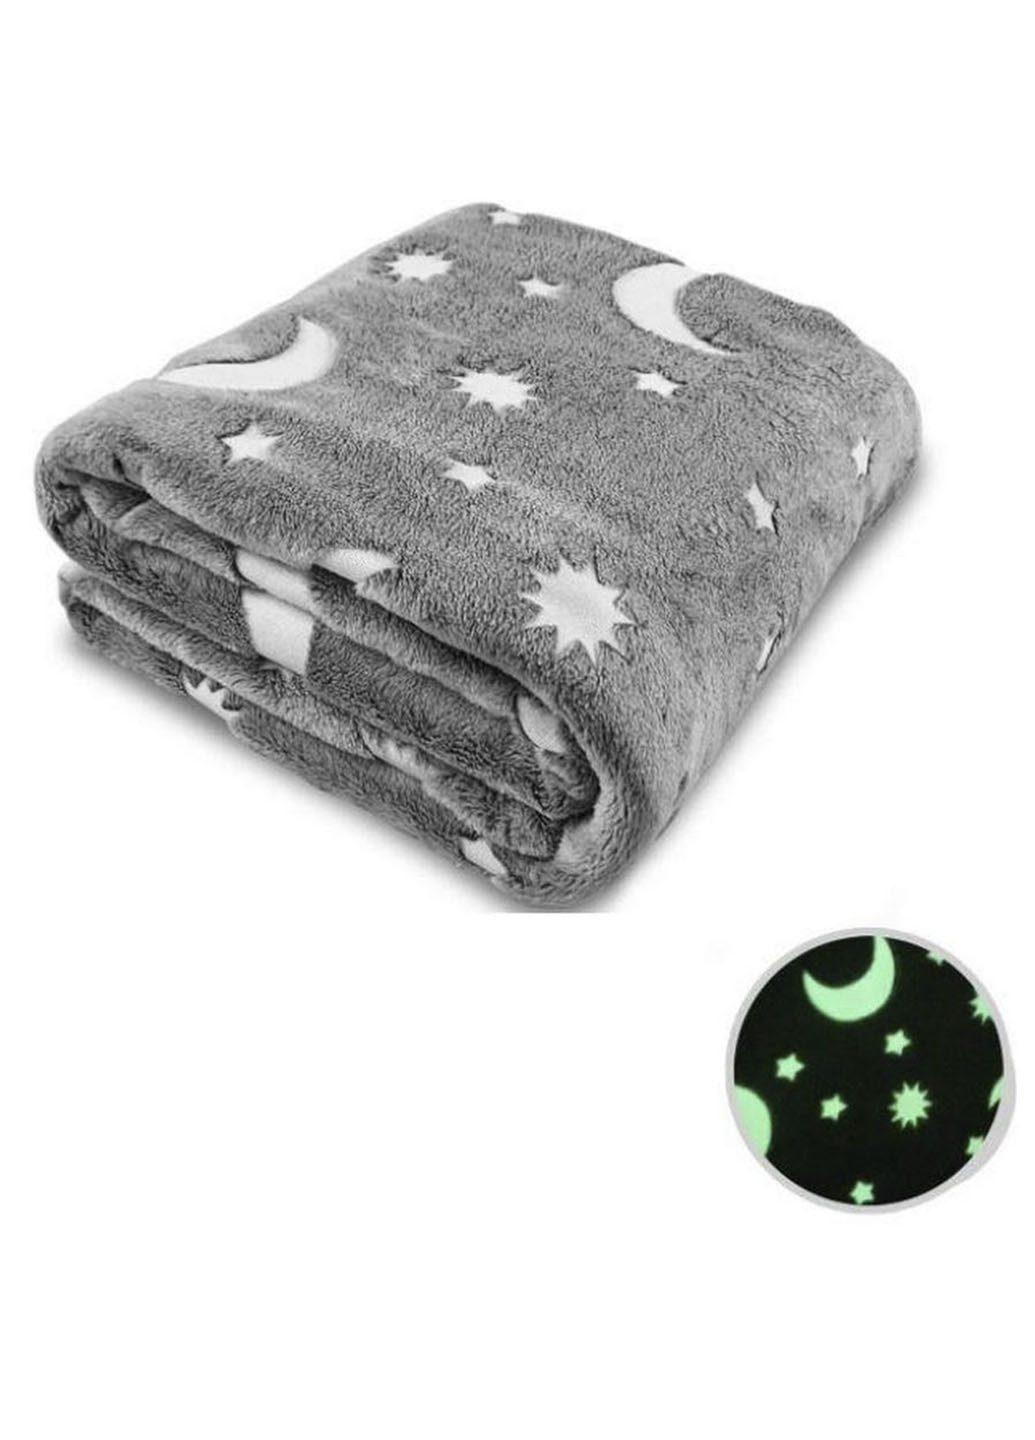 Светящийся в темноте плед одеяло BLANKET Серый цвет 120х165 см плюшевое покрывало со звездами день/ночь Good Idea (251948573)